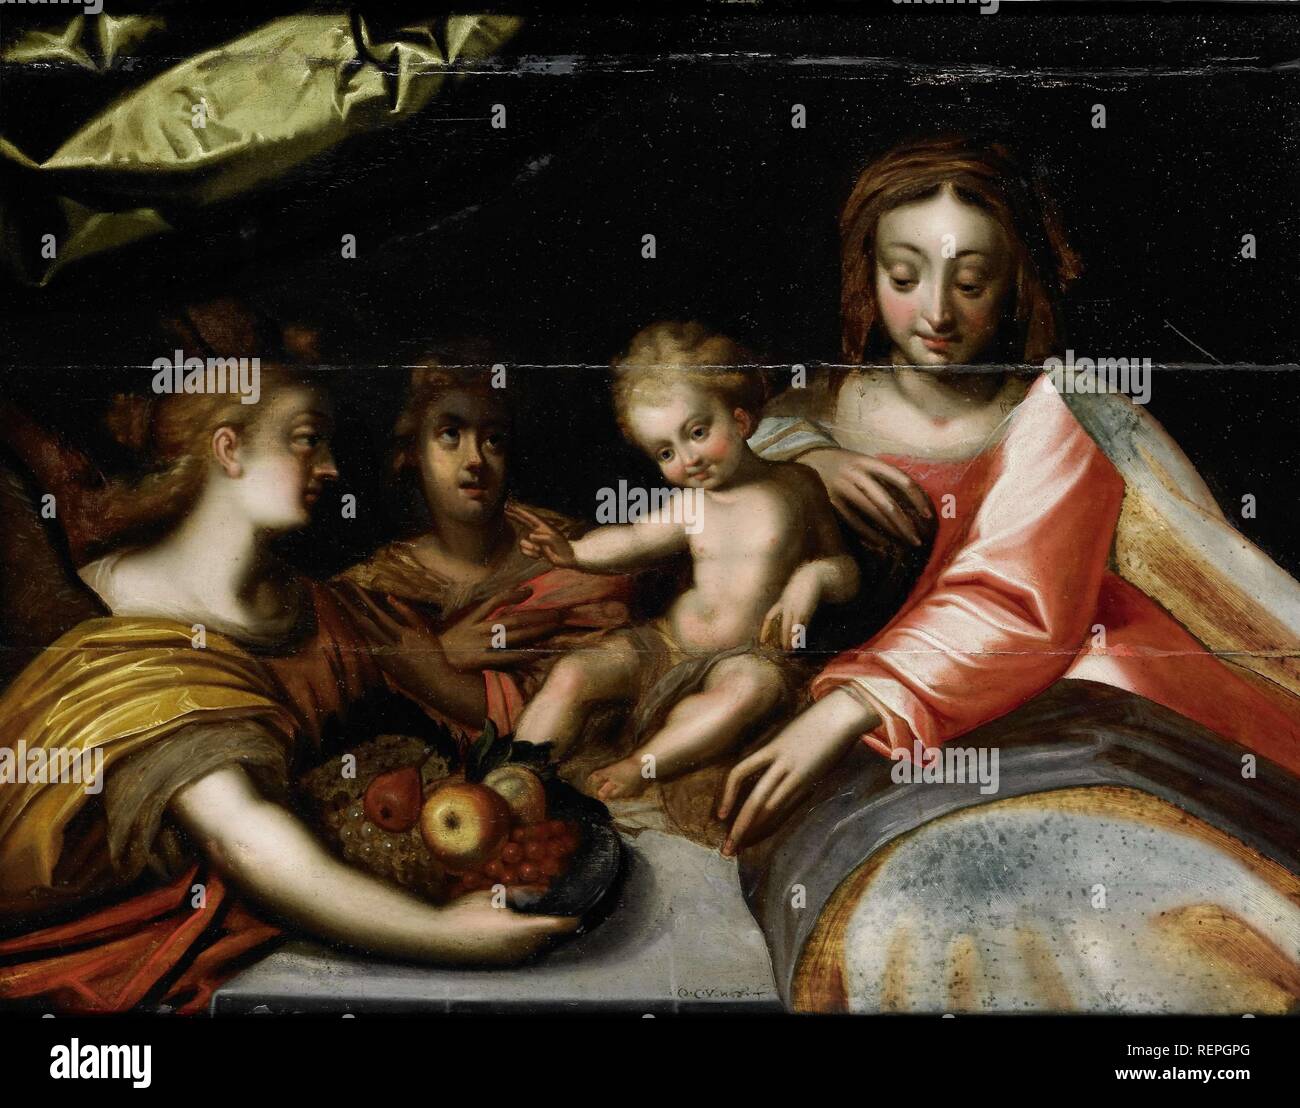 La Sainte Vierge à l'enfant. Dating : ch. 1400 - c. 1950. Dimensions : H 64,5 cm × 84,6 cm × w t 1,8 cm ; d 6.5 cm. Musée : Rijksmuseum, Amsterdam. Banque D'Images